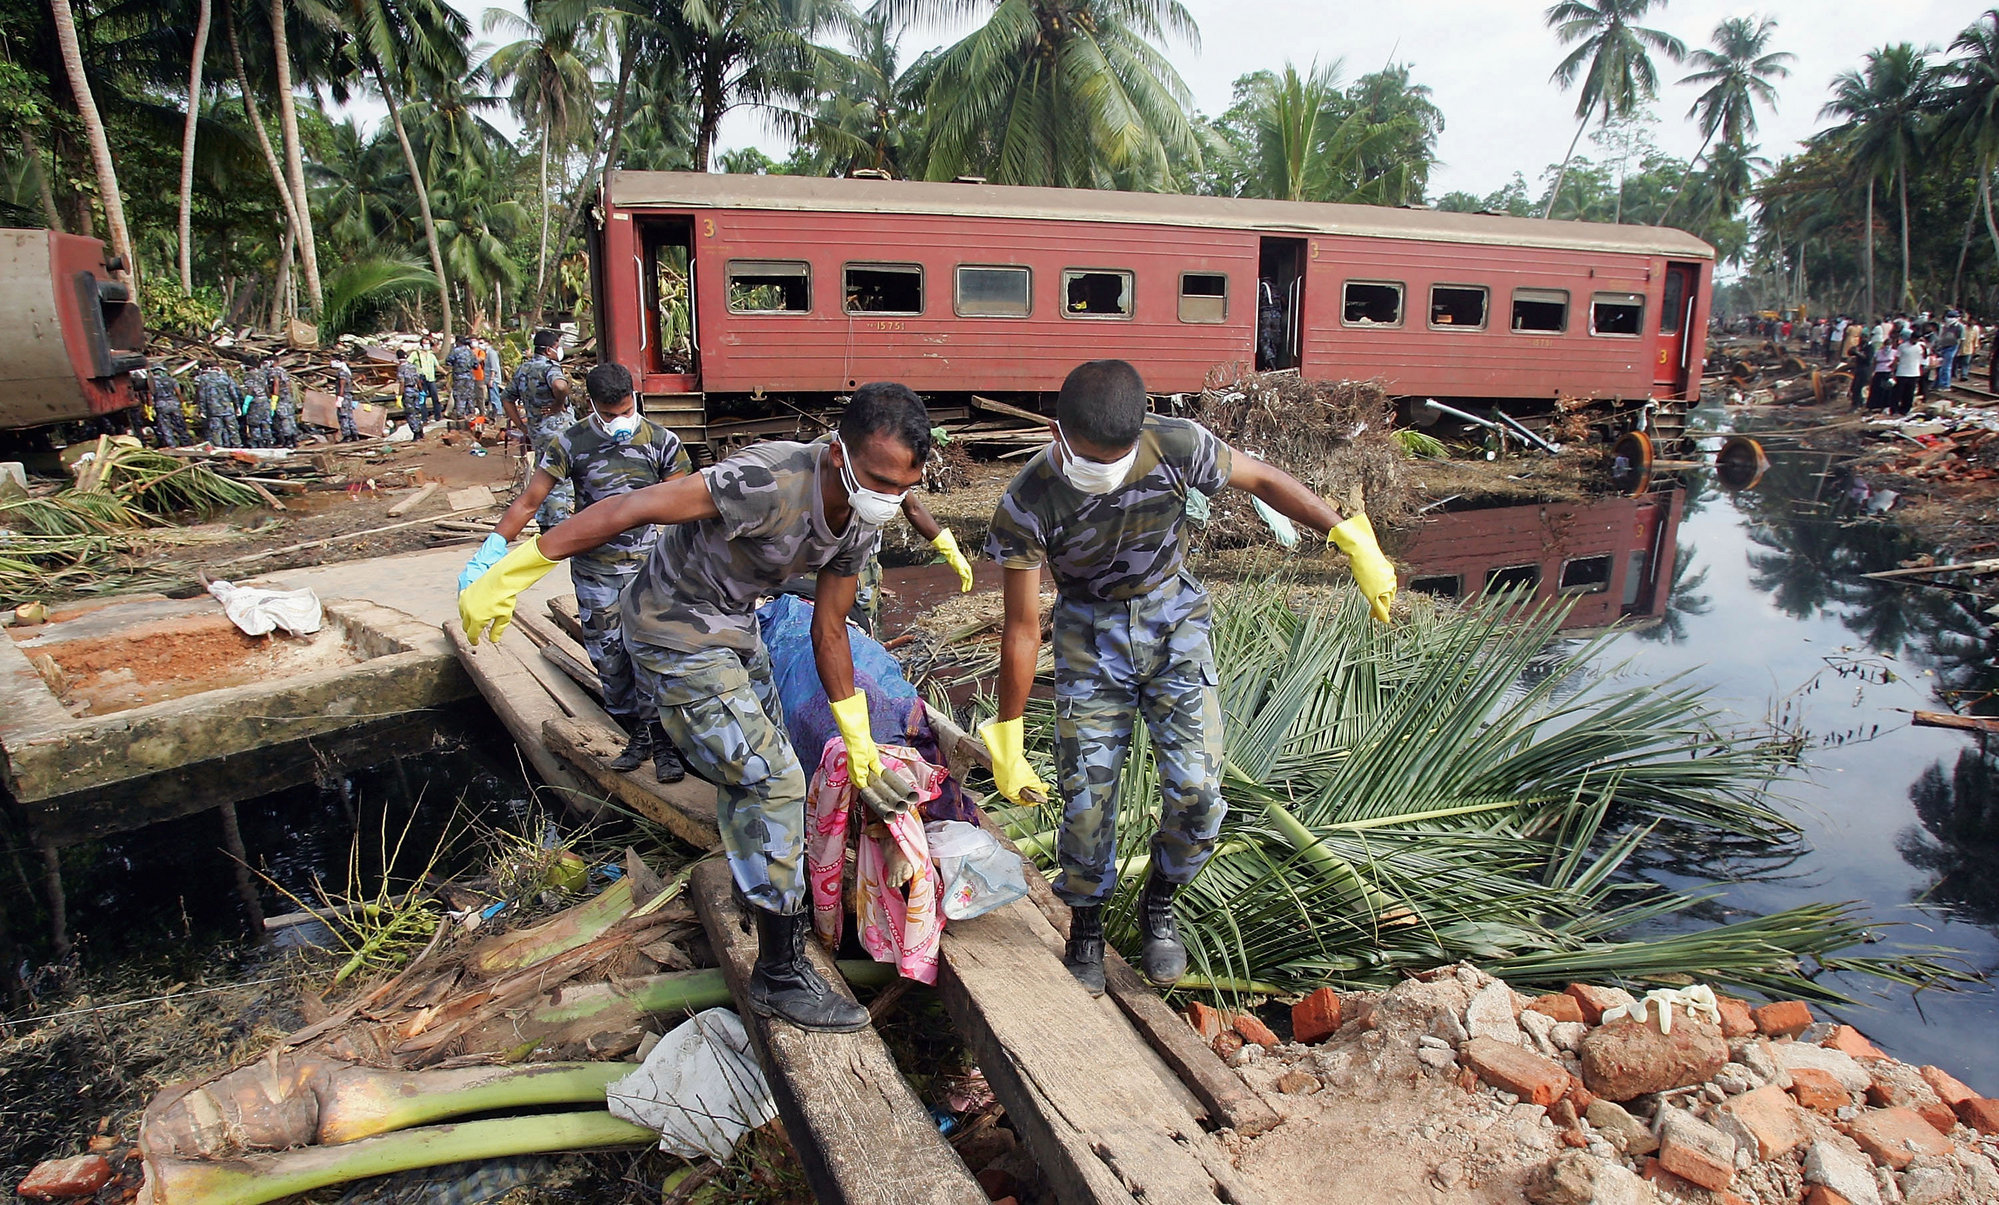 Какая самая крупная катастрофа. Железнодорожная катастрофа и ЦУНАМИ В Шри-Ланке, 2004 год. ЖД катастрофа Шри Ланка 2004. ЦУНАМИ 2004 года Шри Ланка. ЖД катастрофа в Шри Ланке 2004.